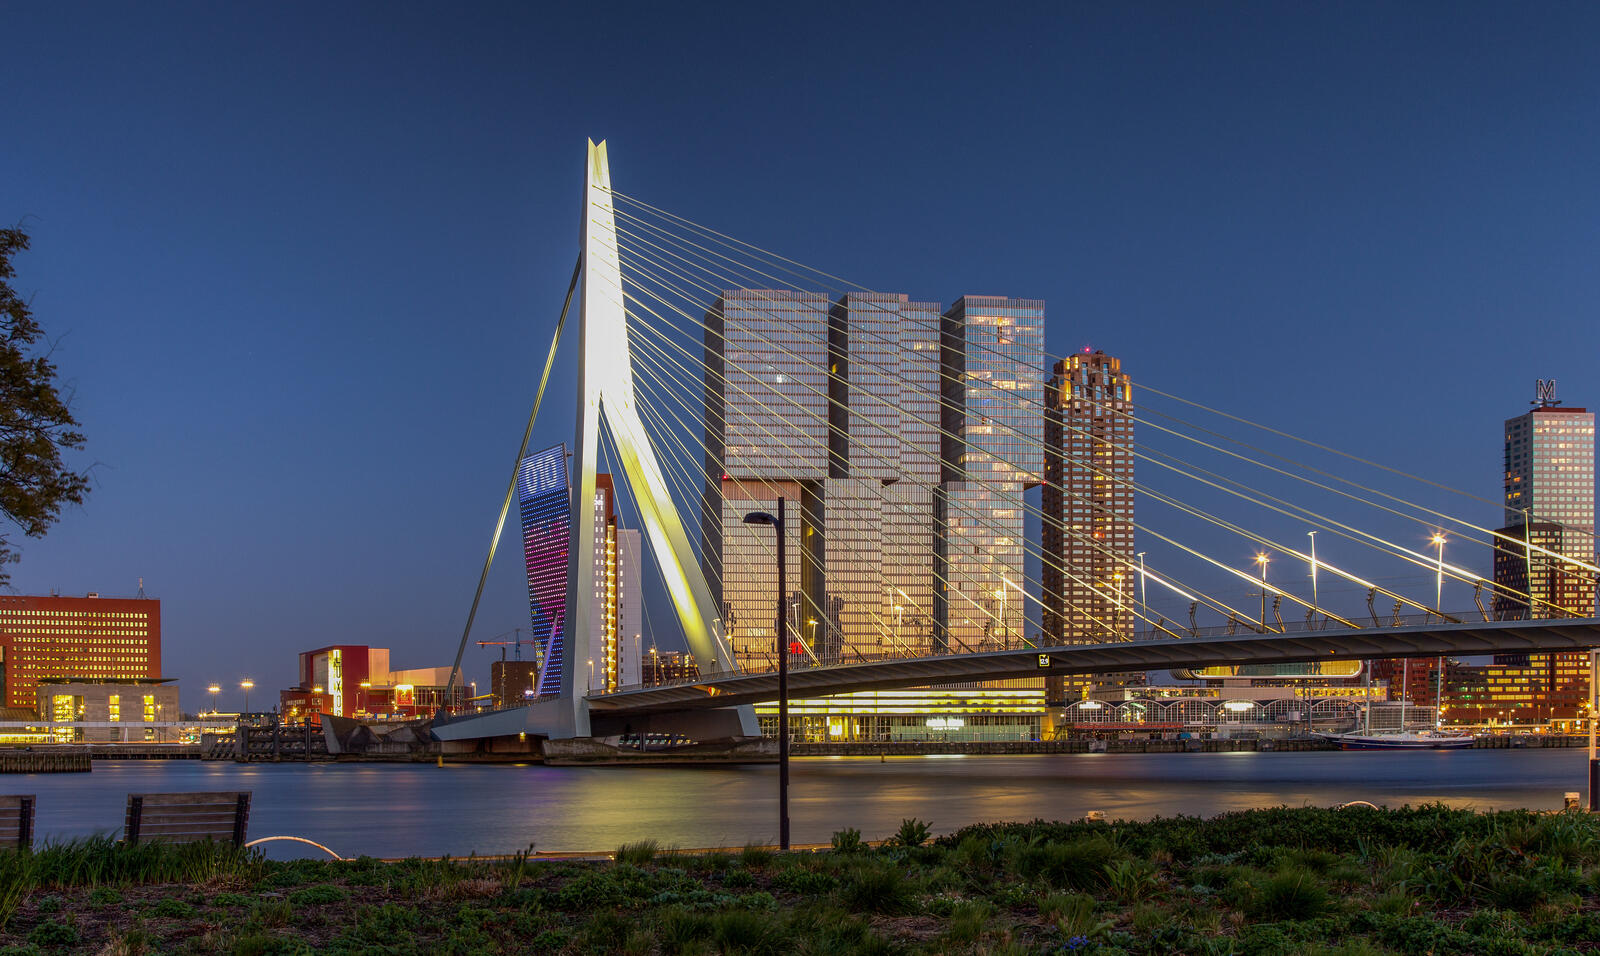 Wallpapers cities Netherlands bridges netherlands on the desktop